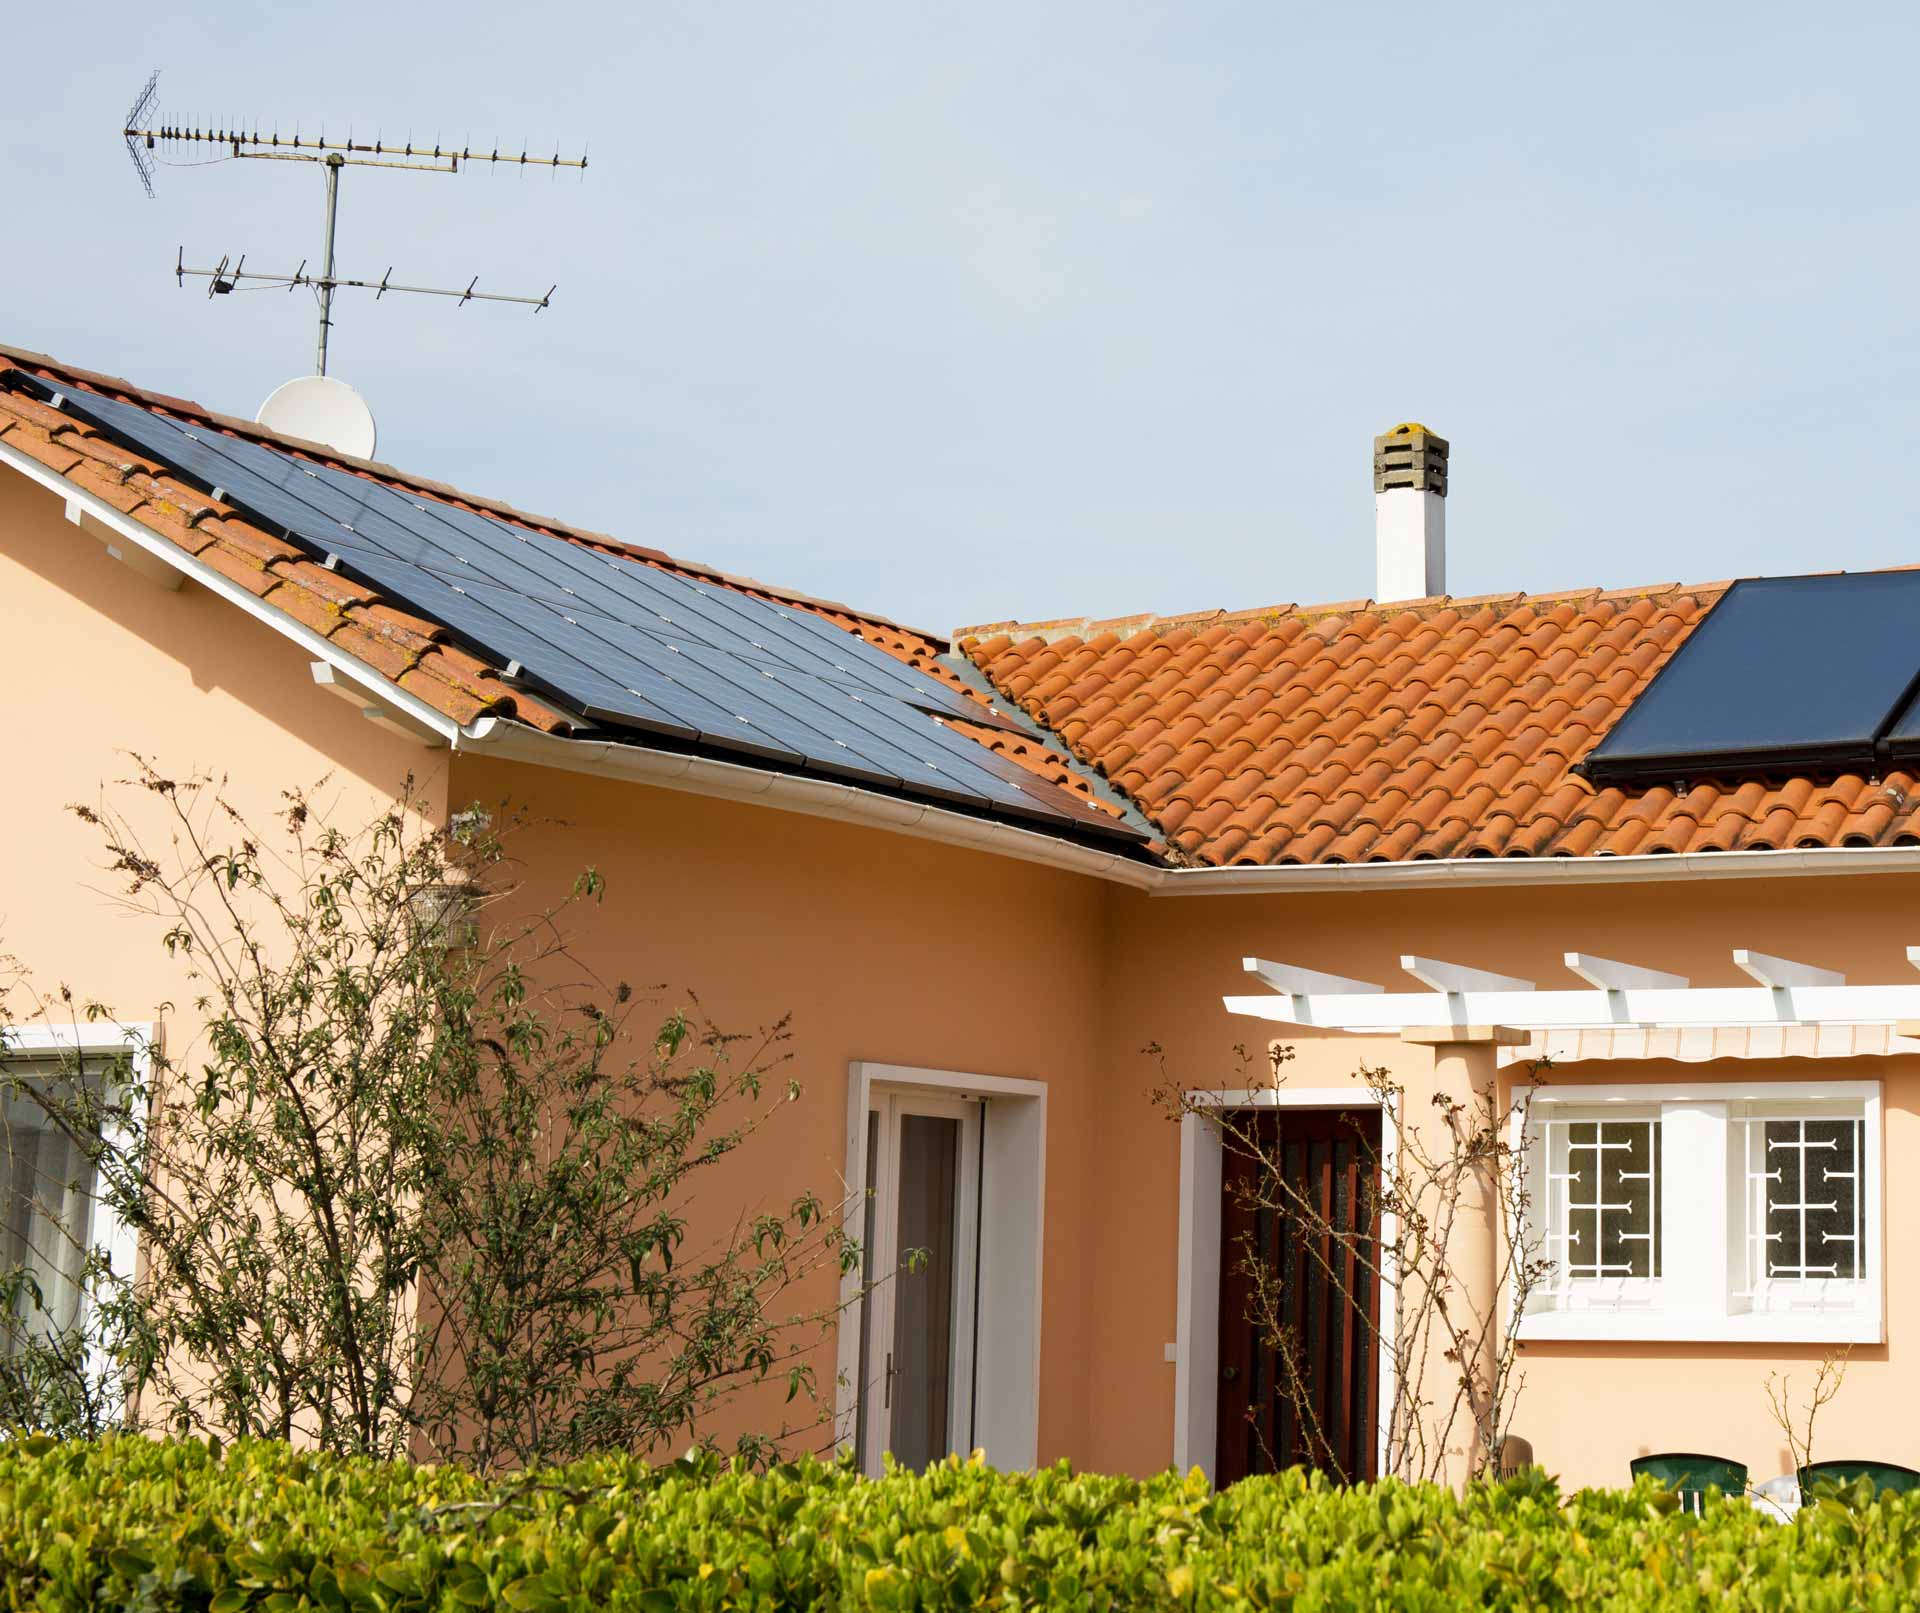 Maison avec une installation de panneaux solaires sur la toiture